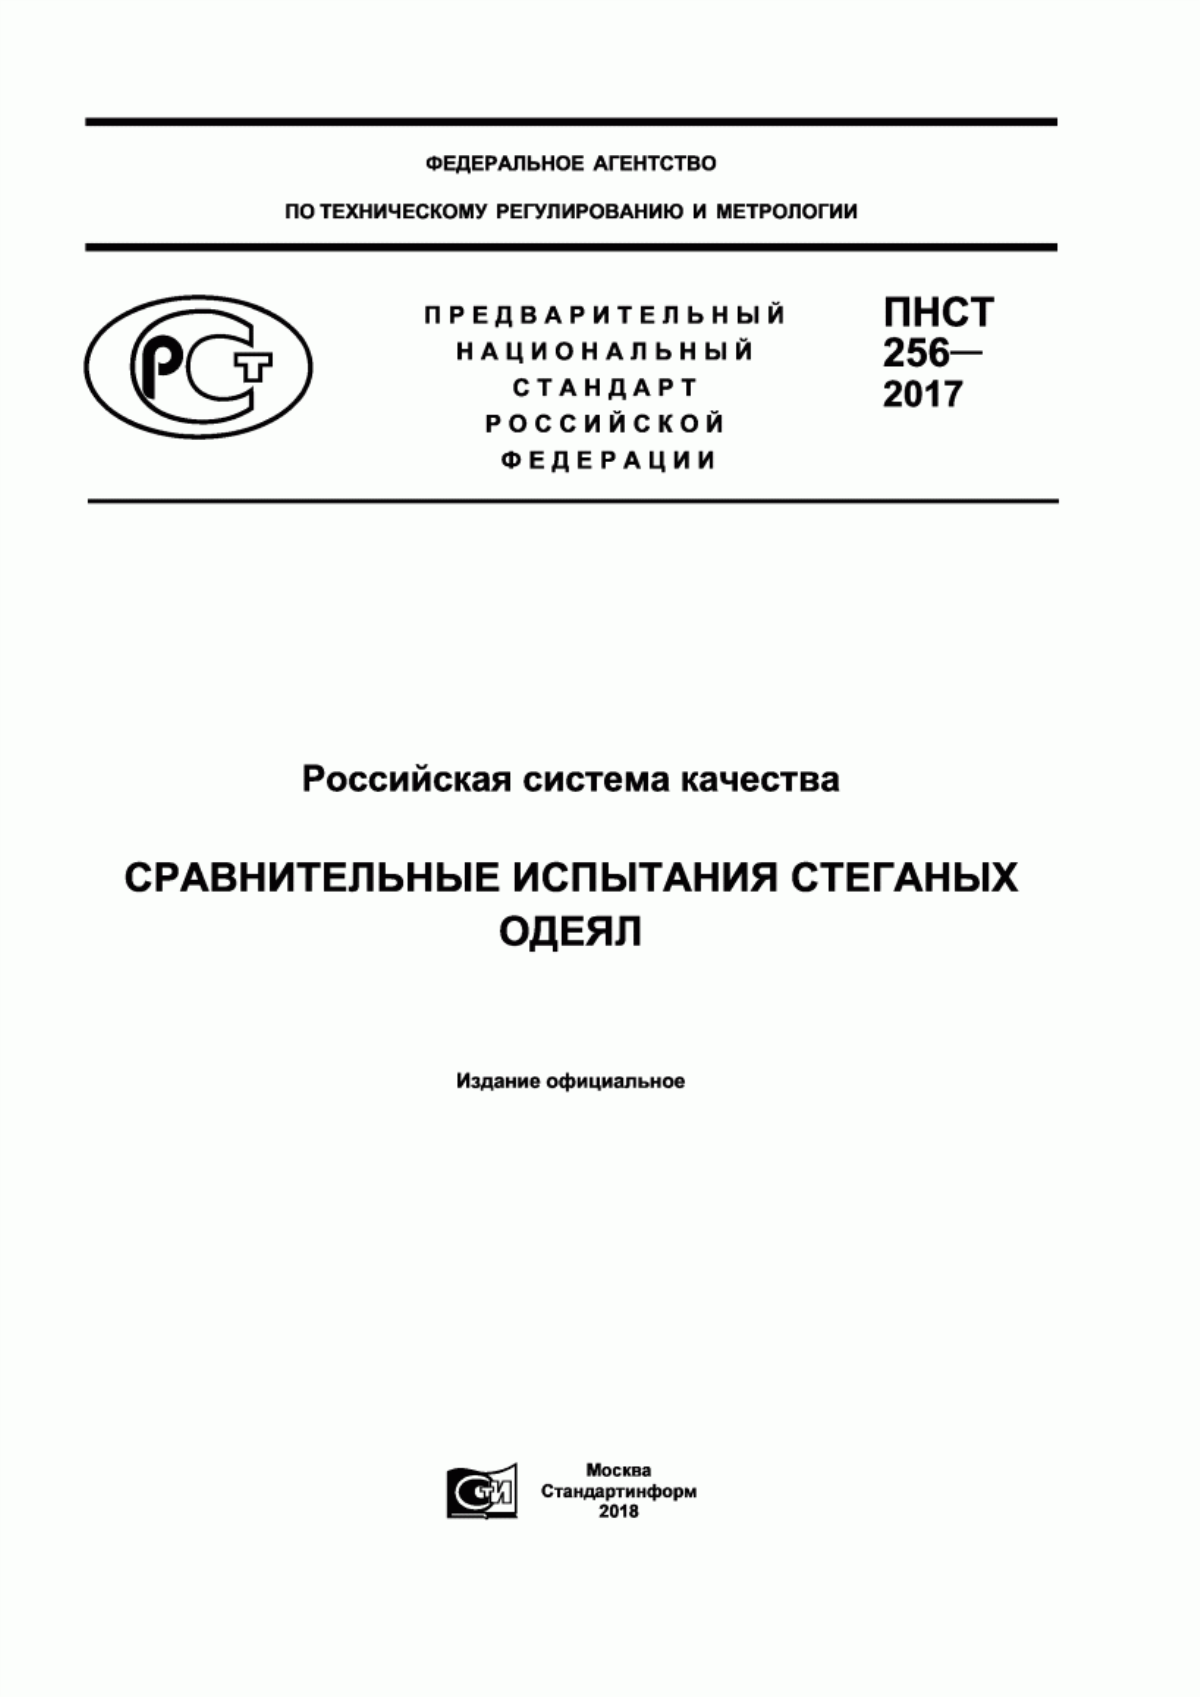 ПНСТ 256-2017 Российская система качества. Сравнительные испытания стеганых одеял